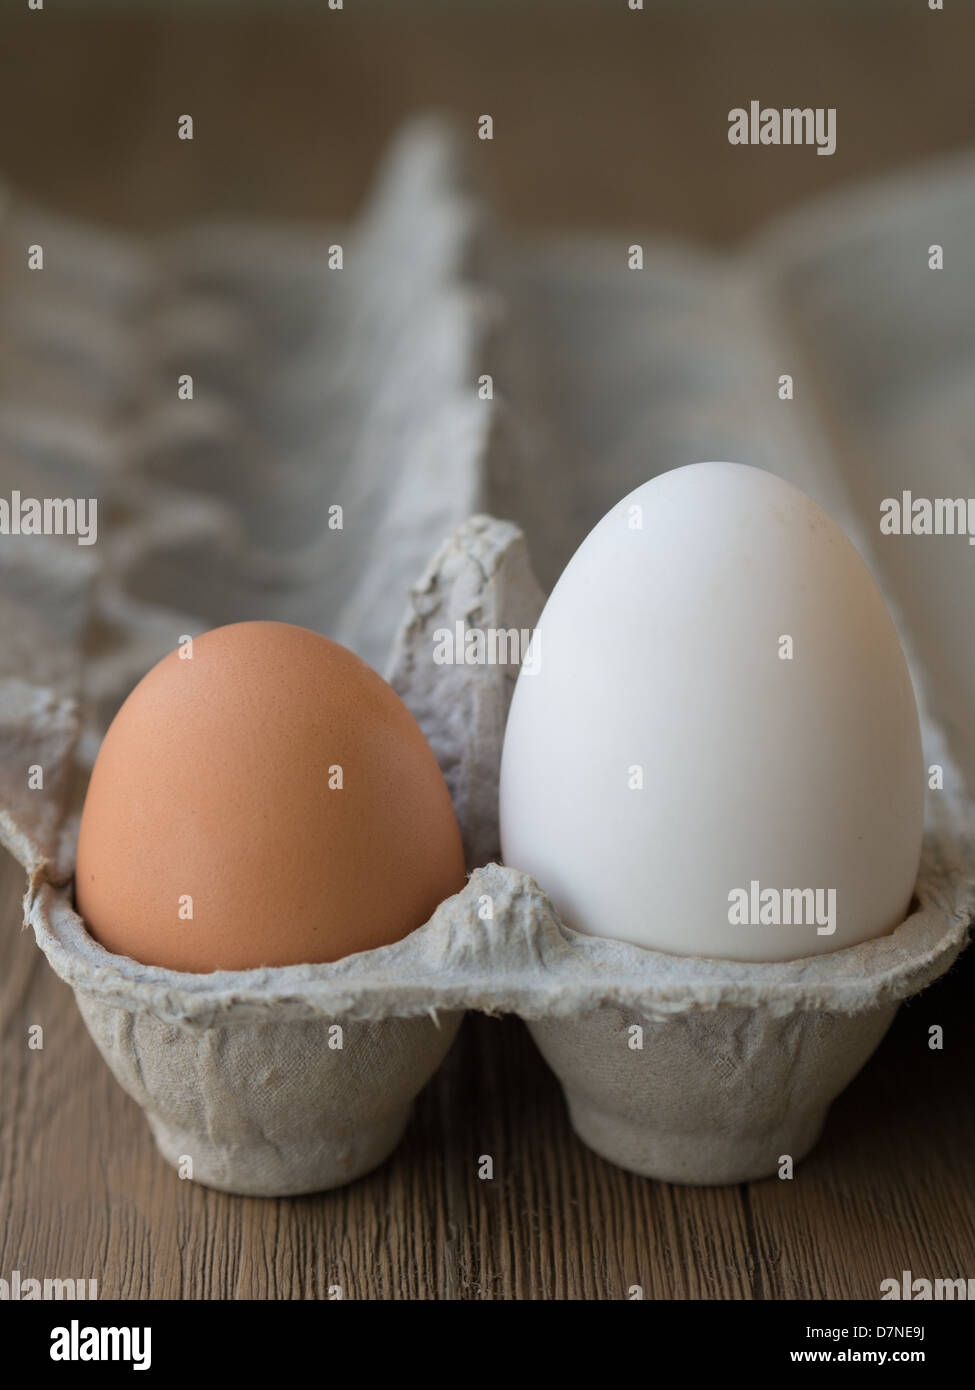 Uovo di oca e uovo di pollo il confronto delle dimensioni Foto Stock